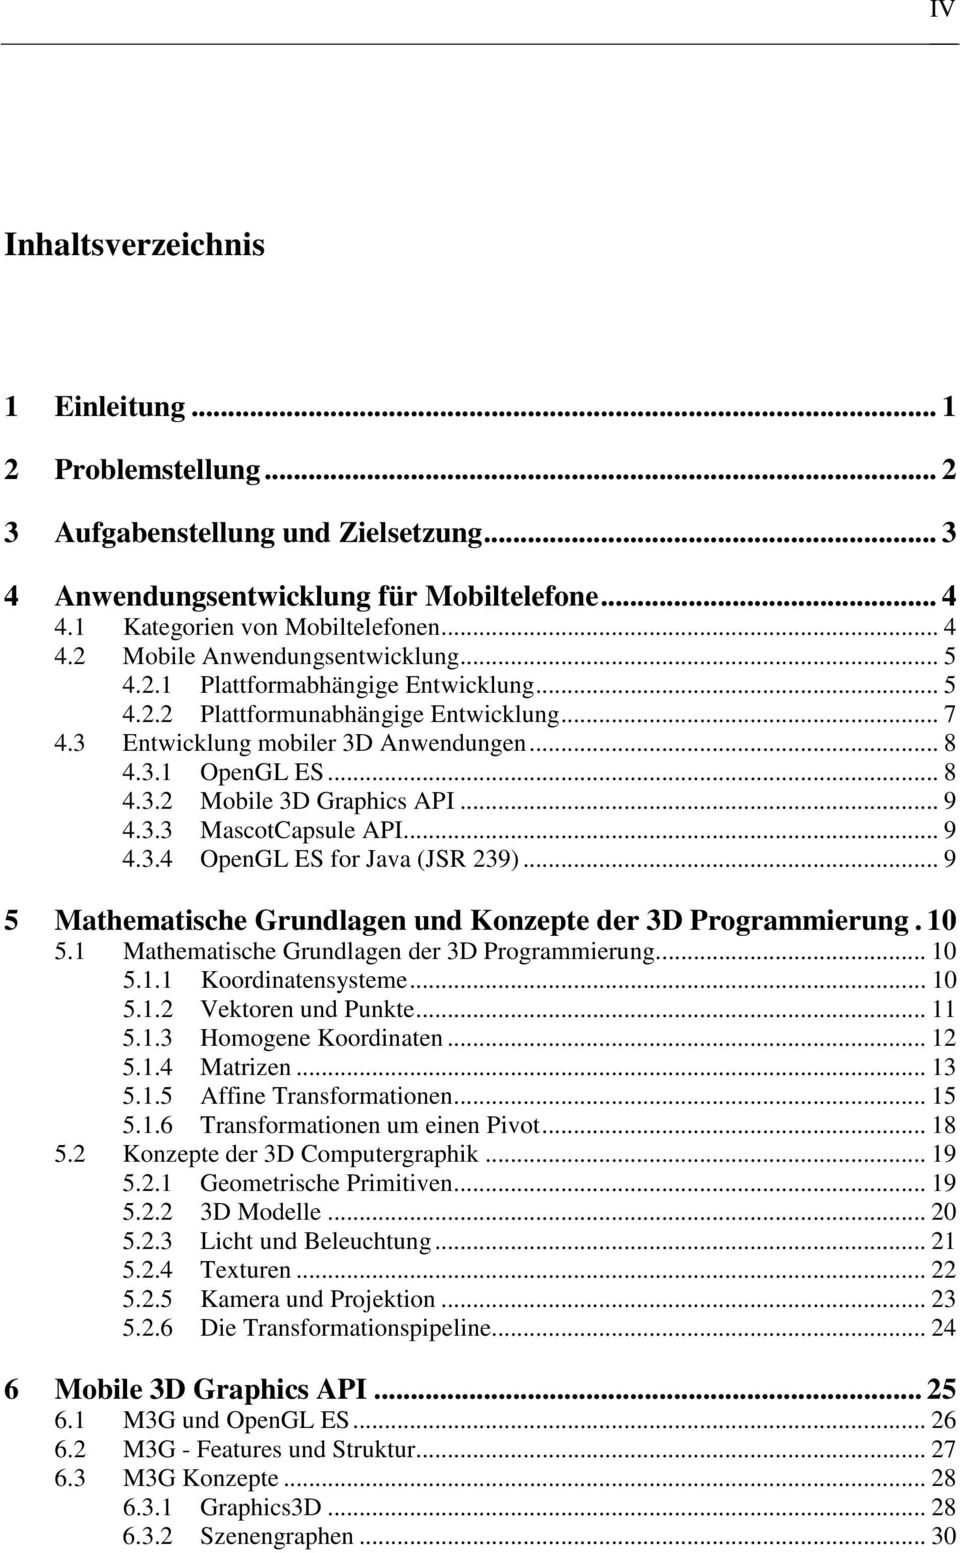 .. 9 4.3.4 OpenGL ES for Java (JSR 239)... 9 5 Mathematische Grundlagen und Konzepte der 3D Programmierung. 1 5.1 Mathematische Grundlagen der 3D Programmierung... 1 5.1.1 Koordinatensysteme... 1 5.1.2 Vektoren und Punkte.